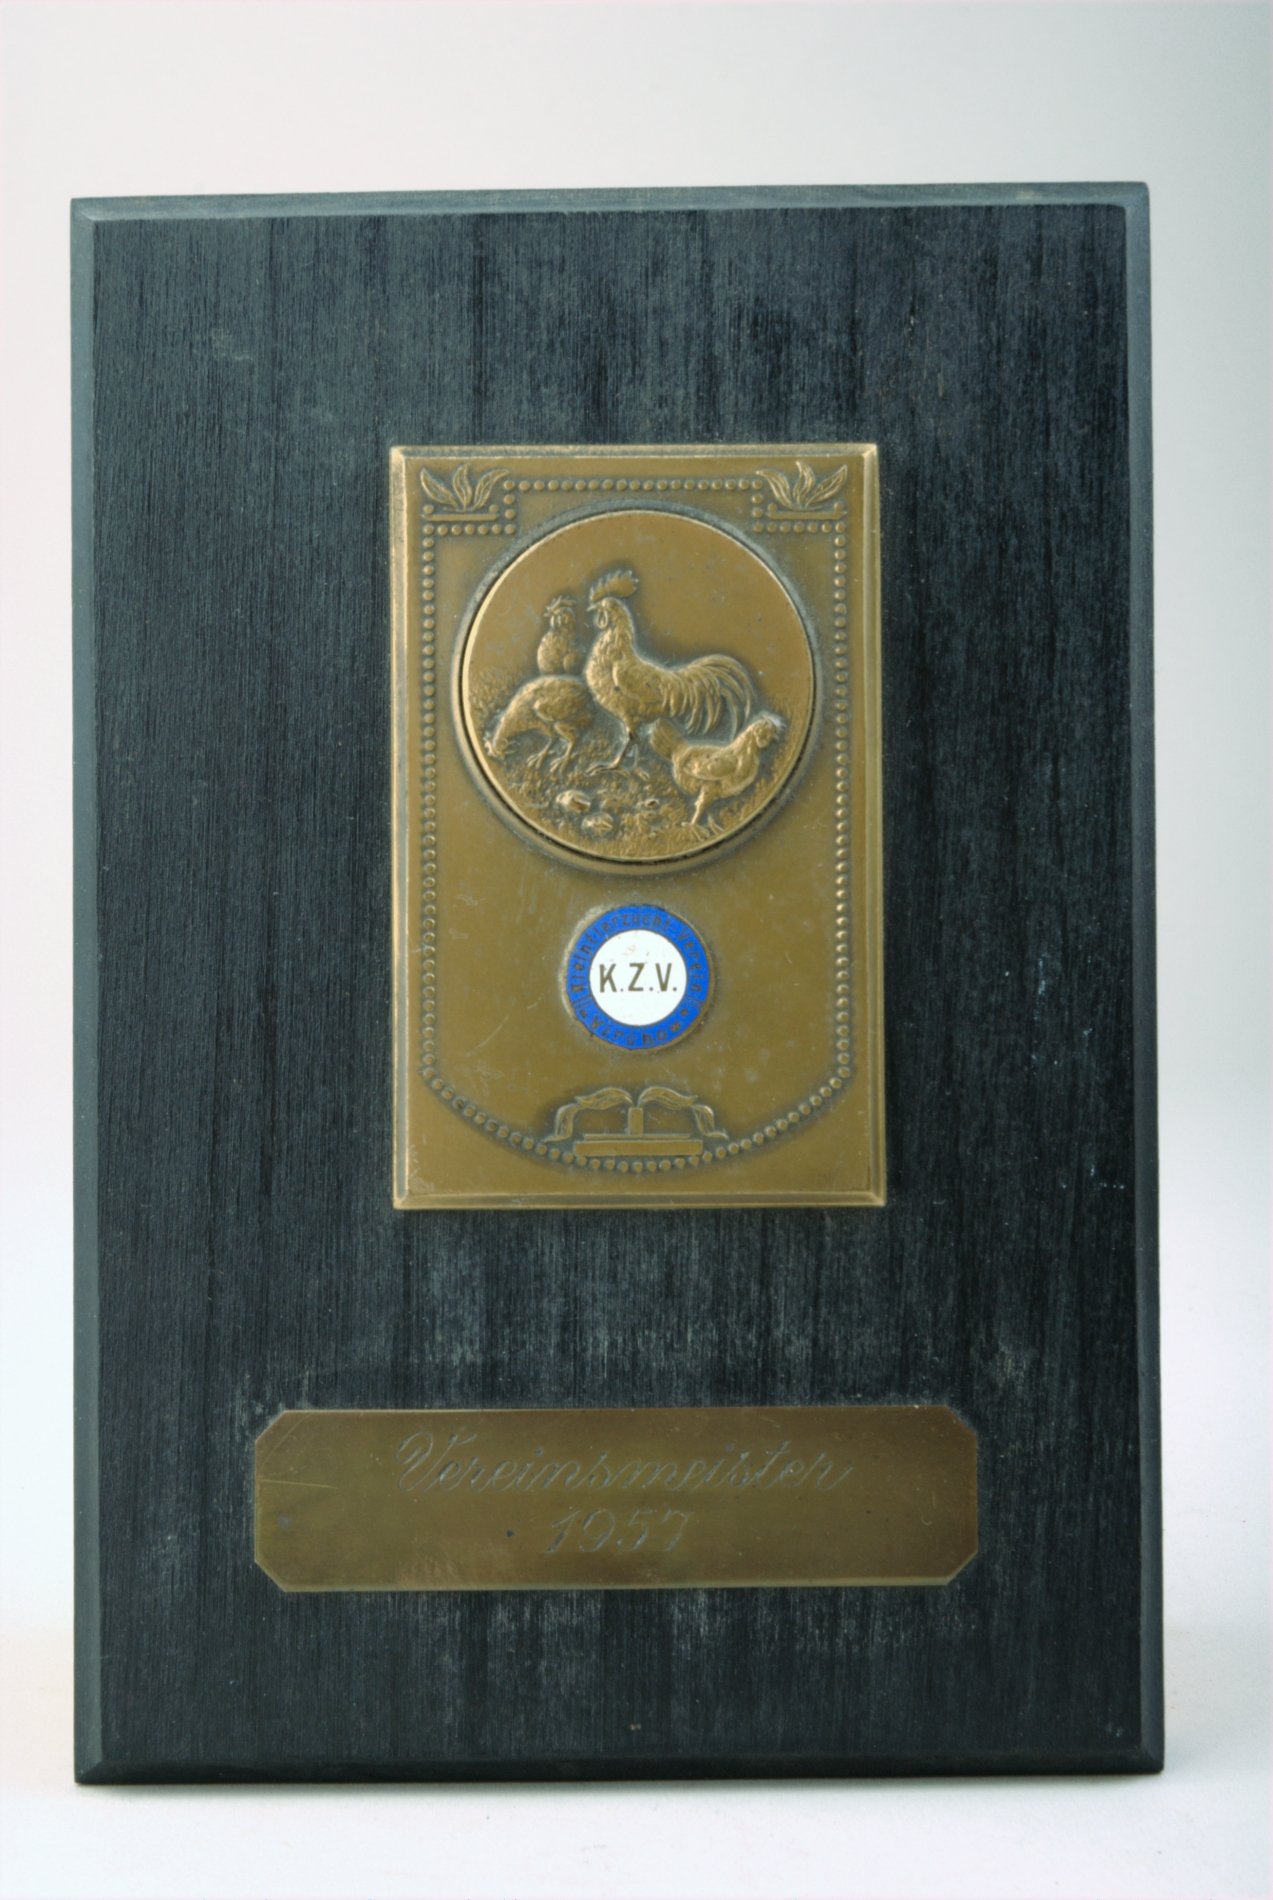 Medaille "Kleintierzuchtverein Virchow Vereinsmeister 1957" (Stiftung Domäne Dahlem - Landgut und Museum, Weiternutzung nur mit Genehmigung des Museums CC BY-NC-SA)